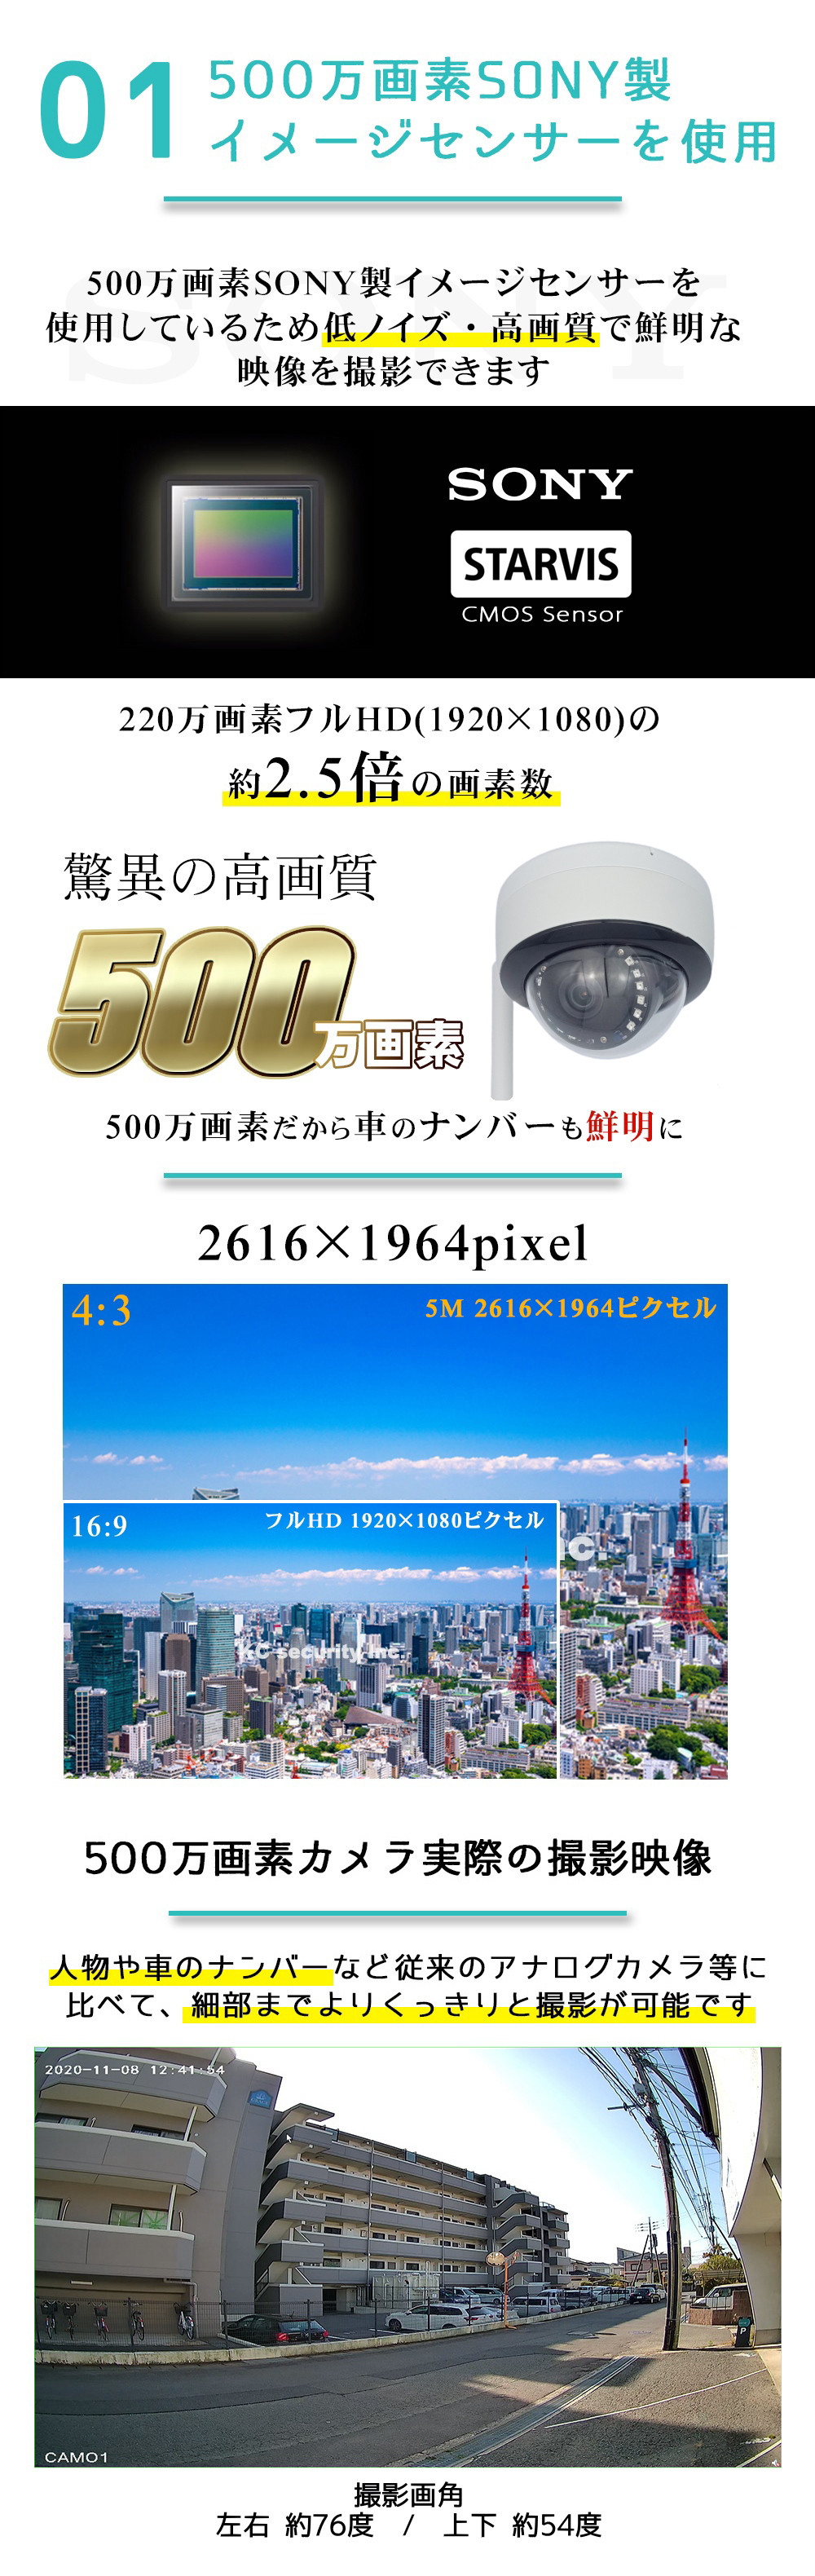 防犯カメラ 屋外 ワイヤレス ドーム型 Wifiカメラ SDカード録画 防水 500万画素 監視カメラ ネットワークカメラ IPカメラ  スマホで簡単アクセス KC-12760